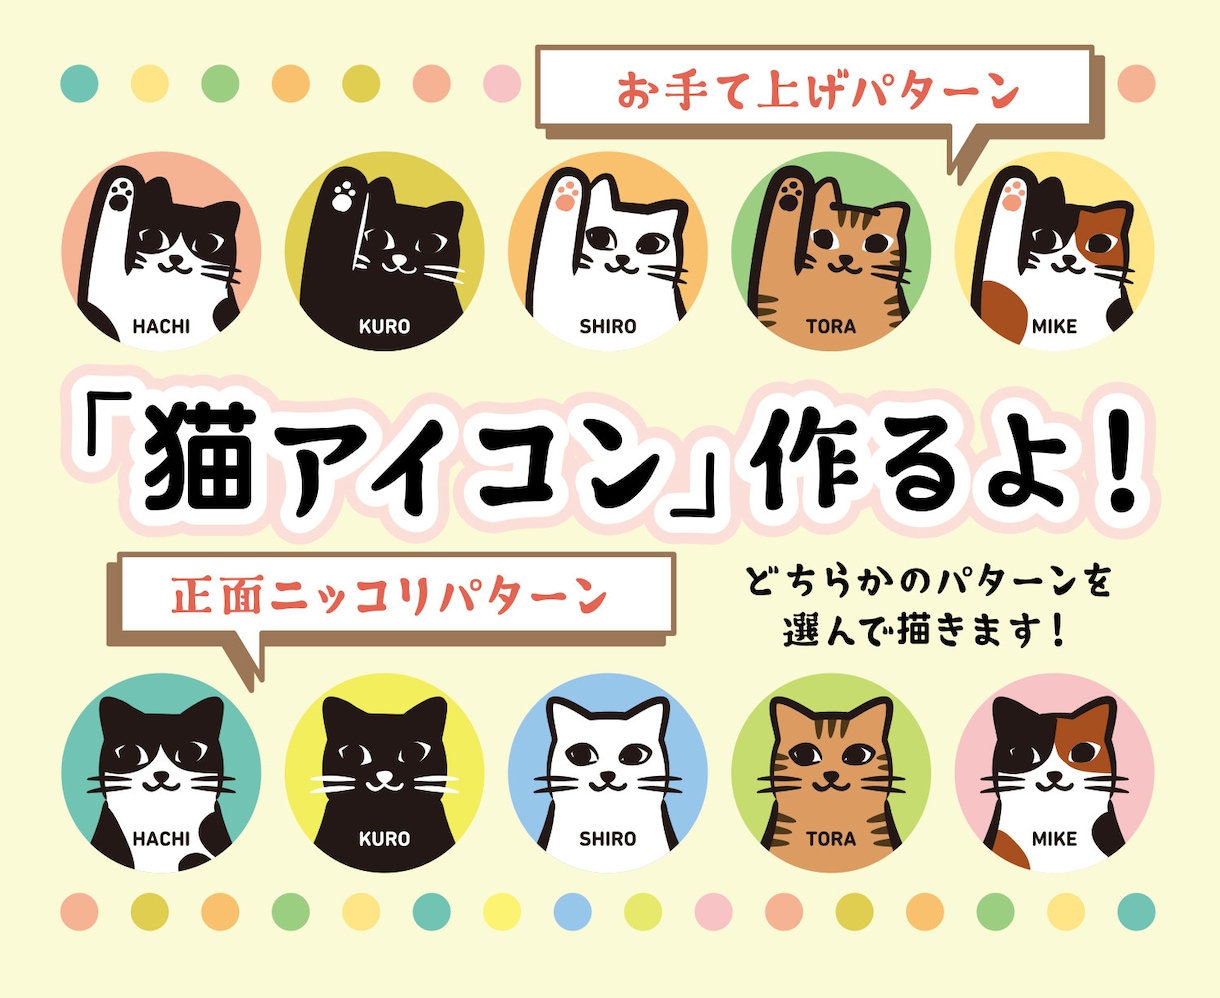 可愛い「シンプル」な「猫似顔絵」を描きますます SNSや紙媒体など、相棒のペットを紹介ください。 イメージ1